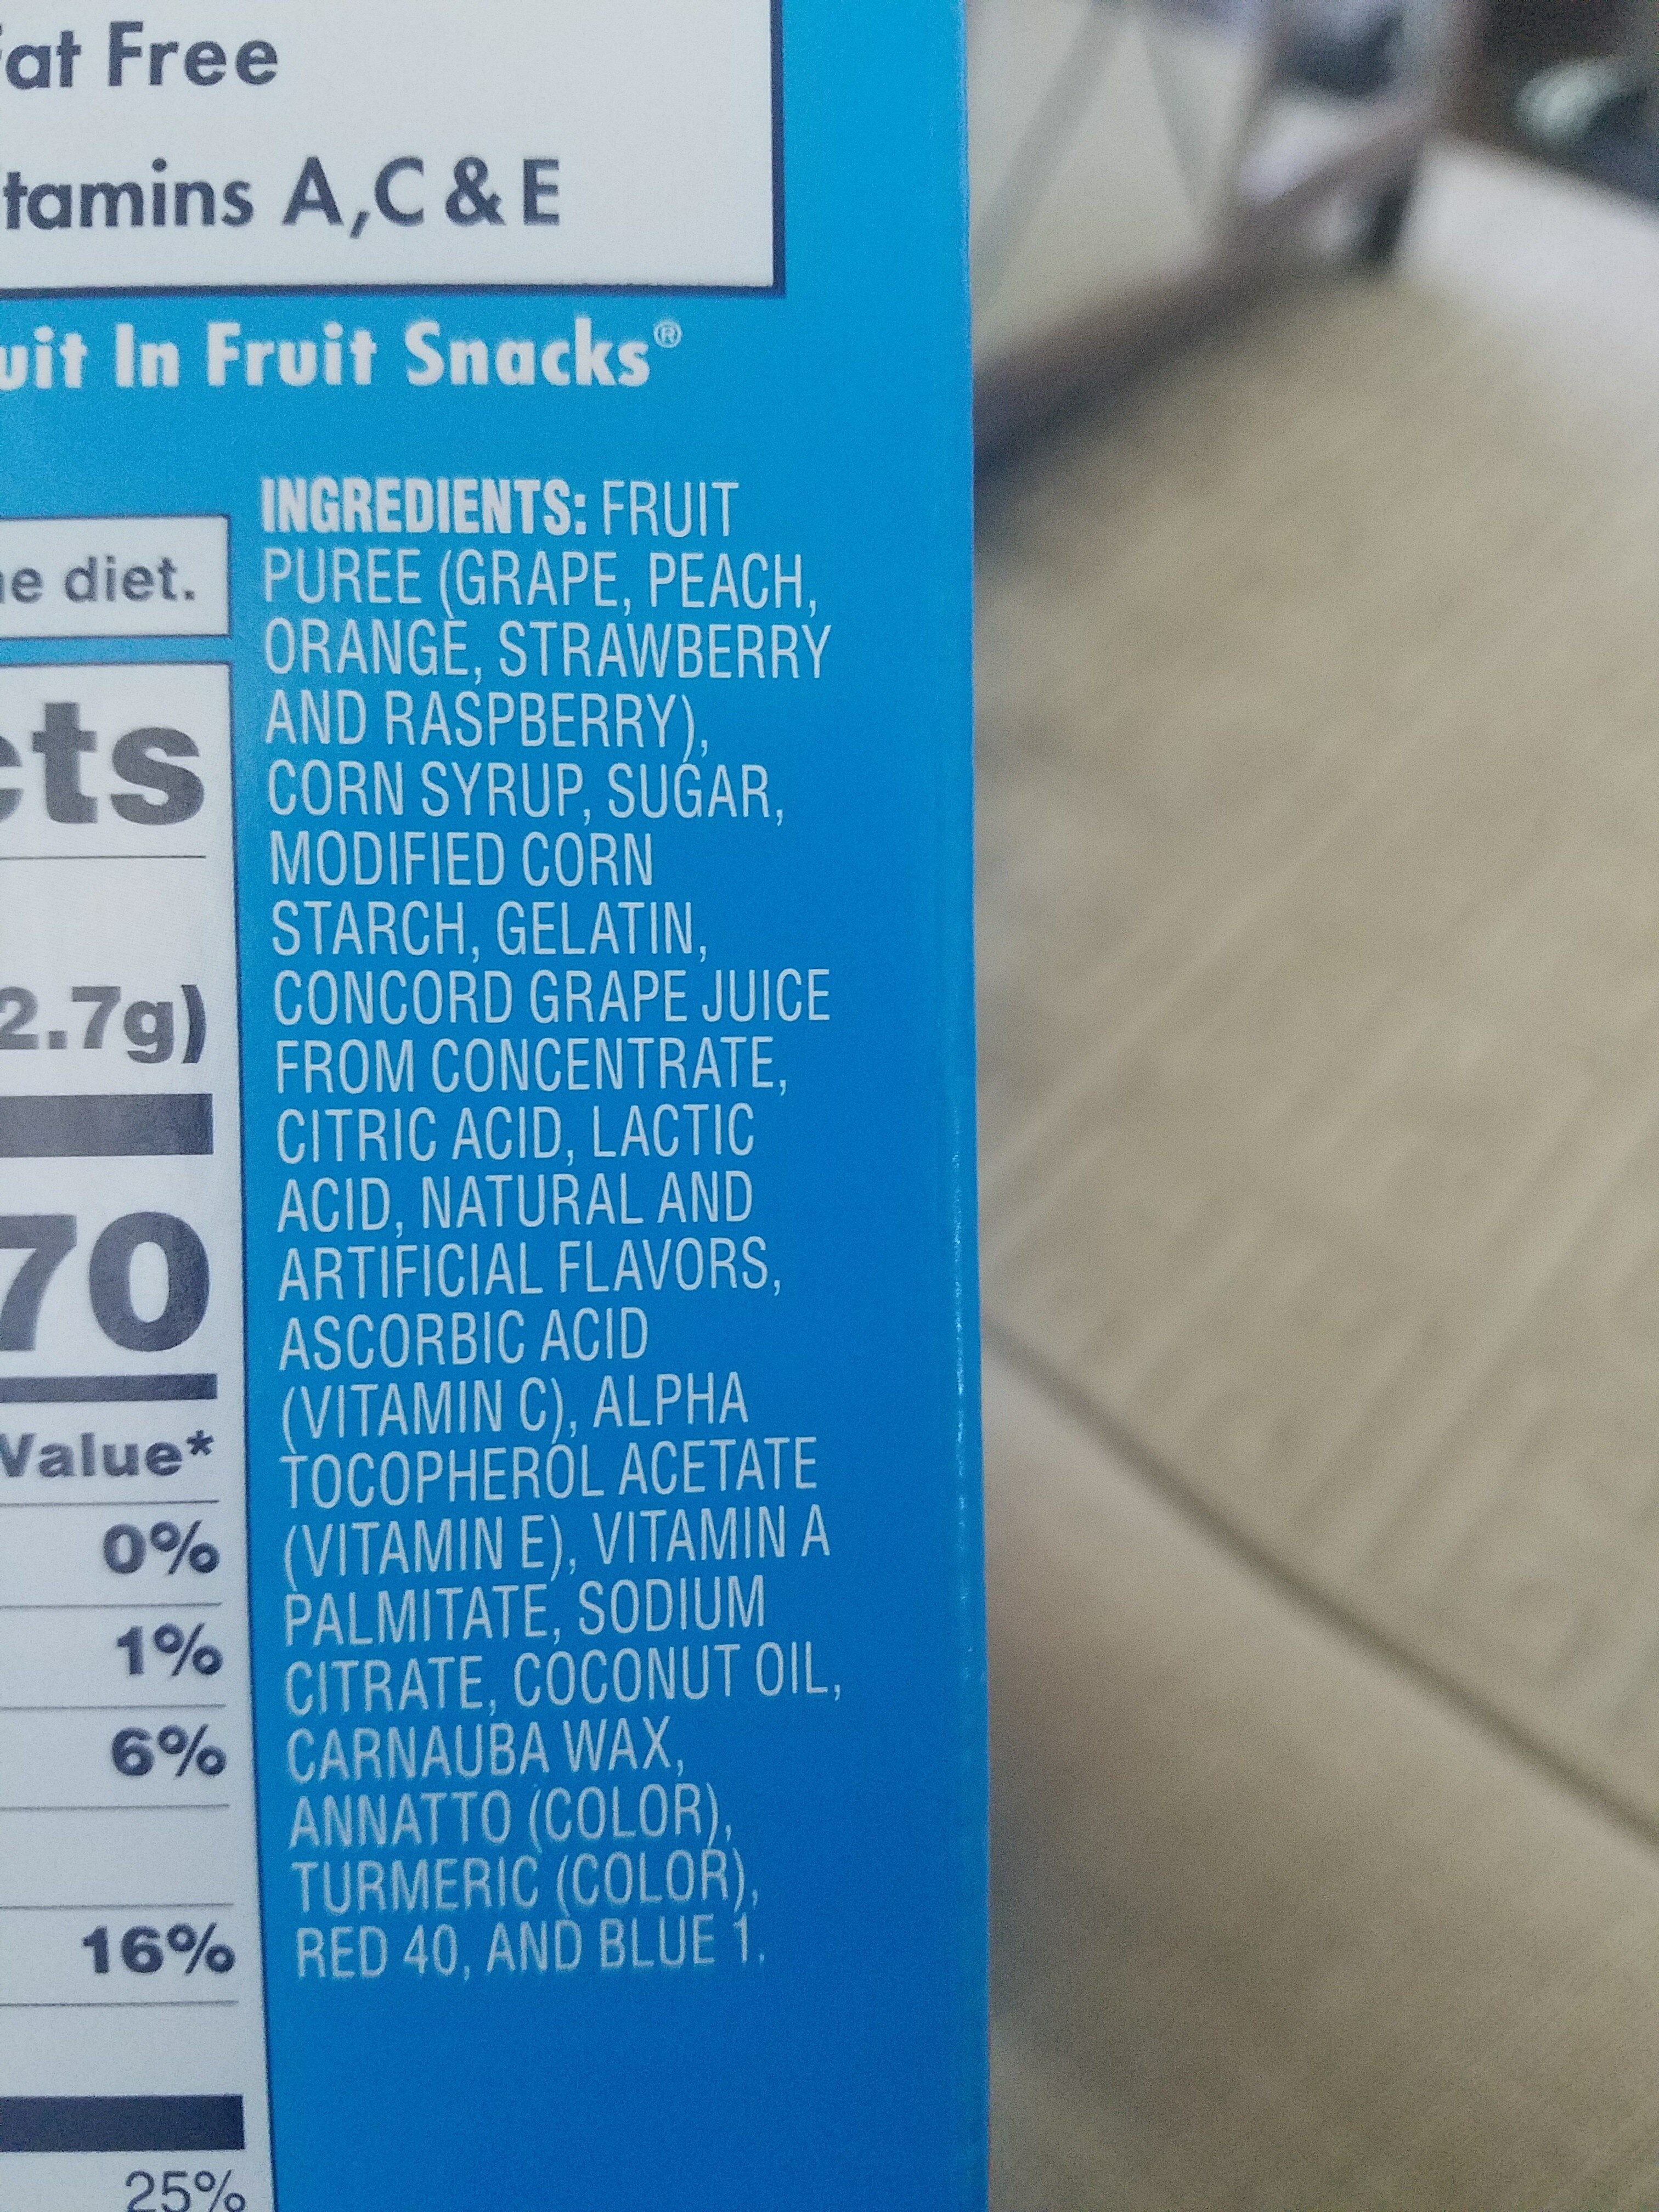 Fruit snacks - Ingredients